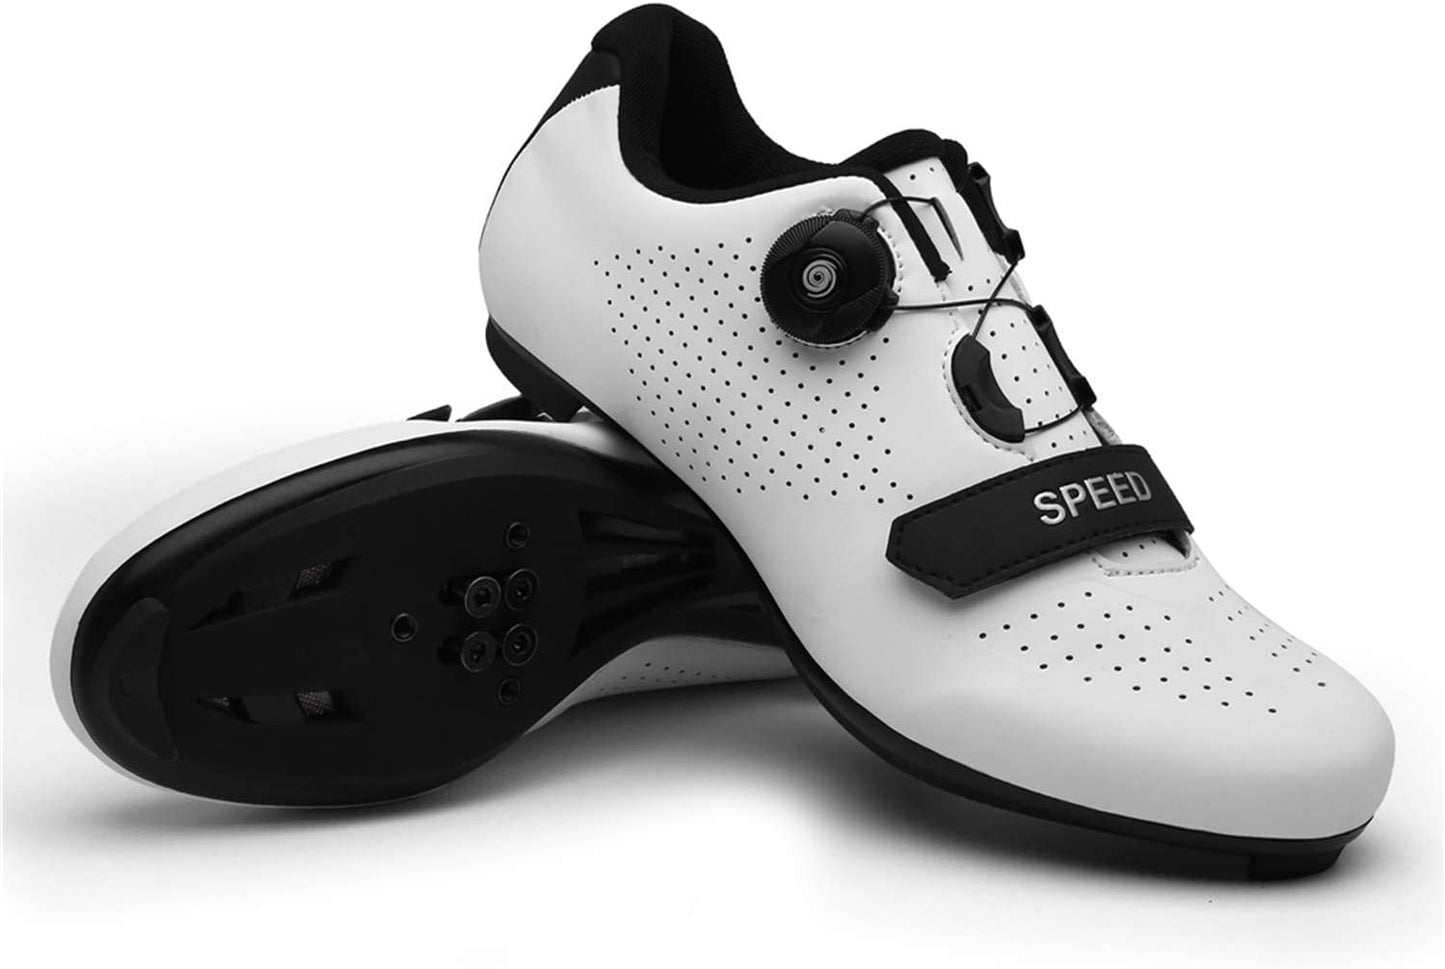 Scurtain Unisex Road Bike Cycling Shoes, White, EU 38